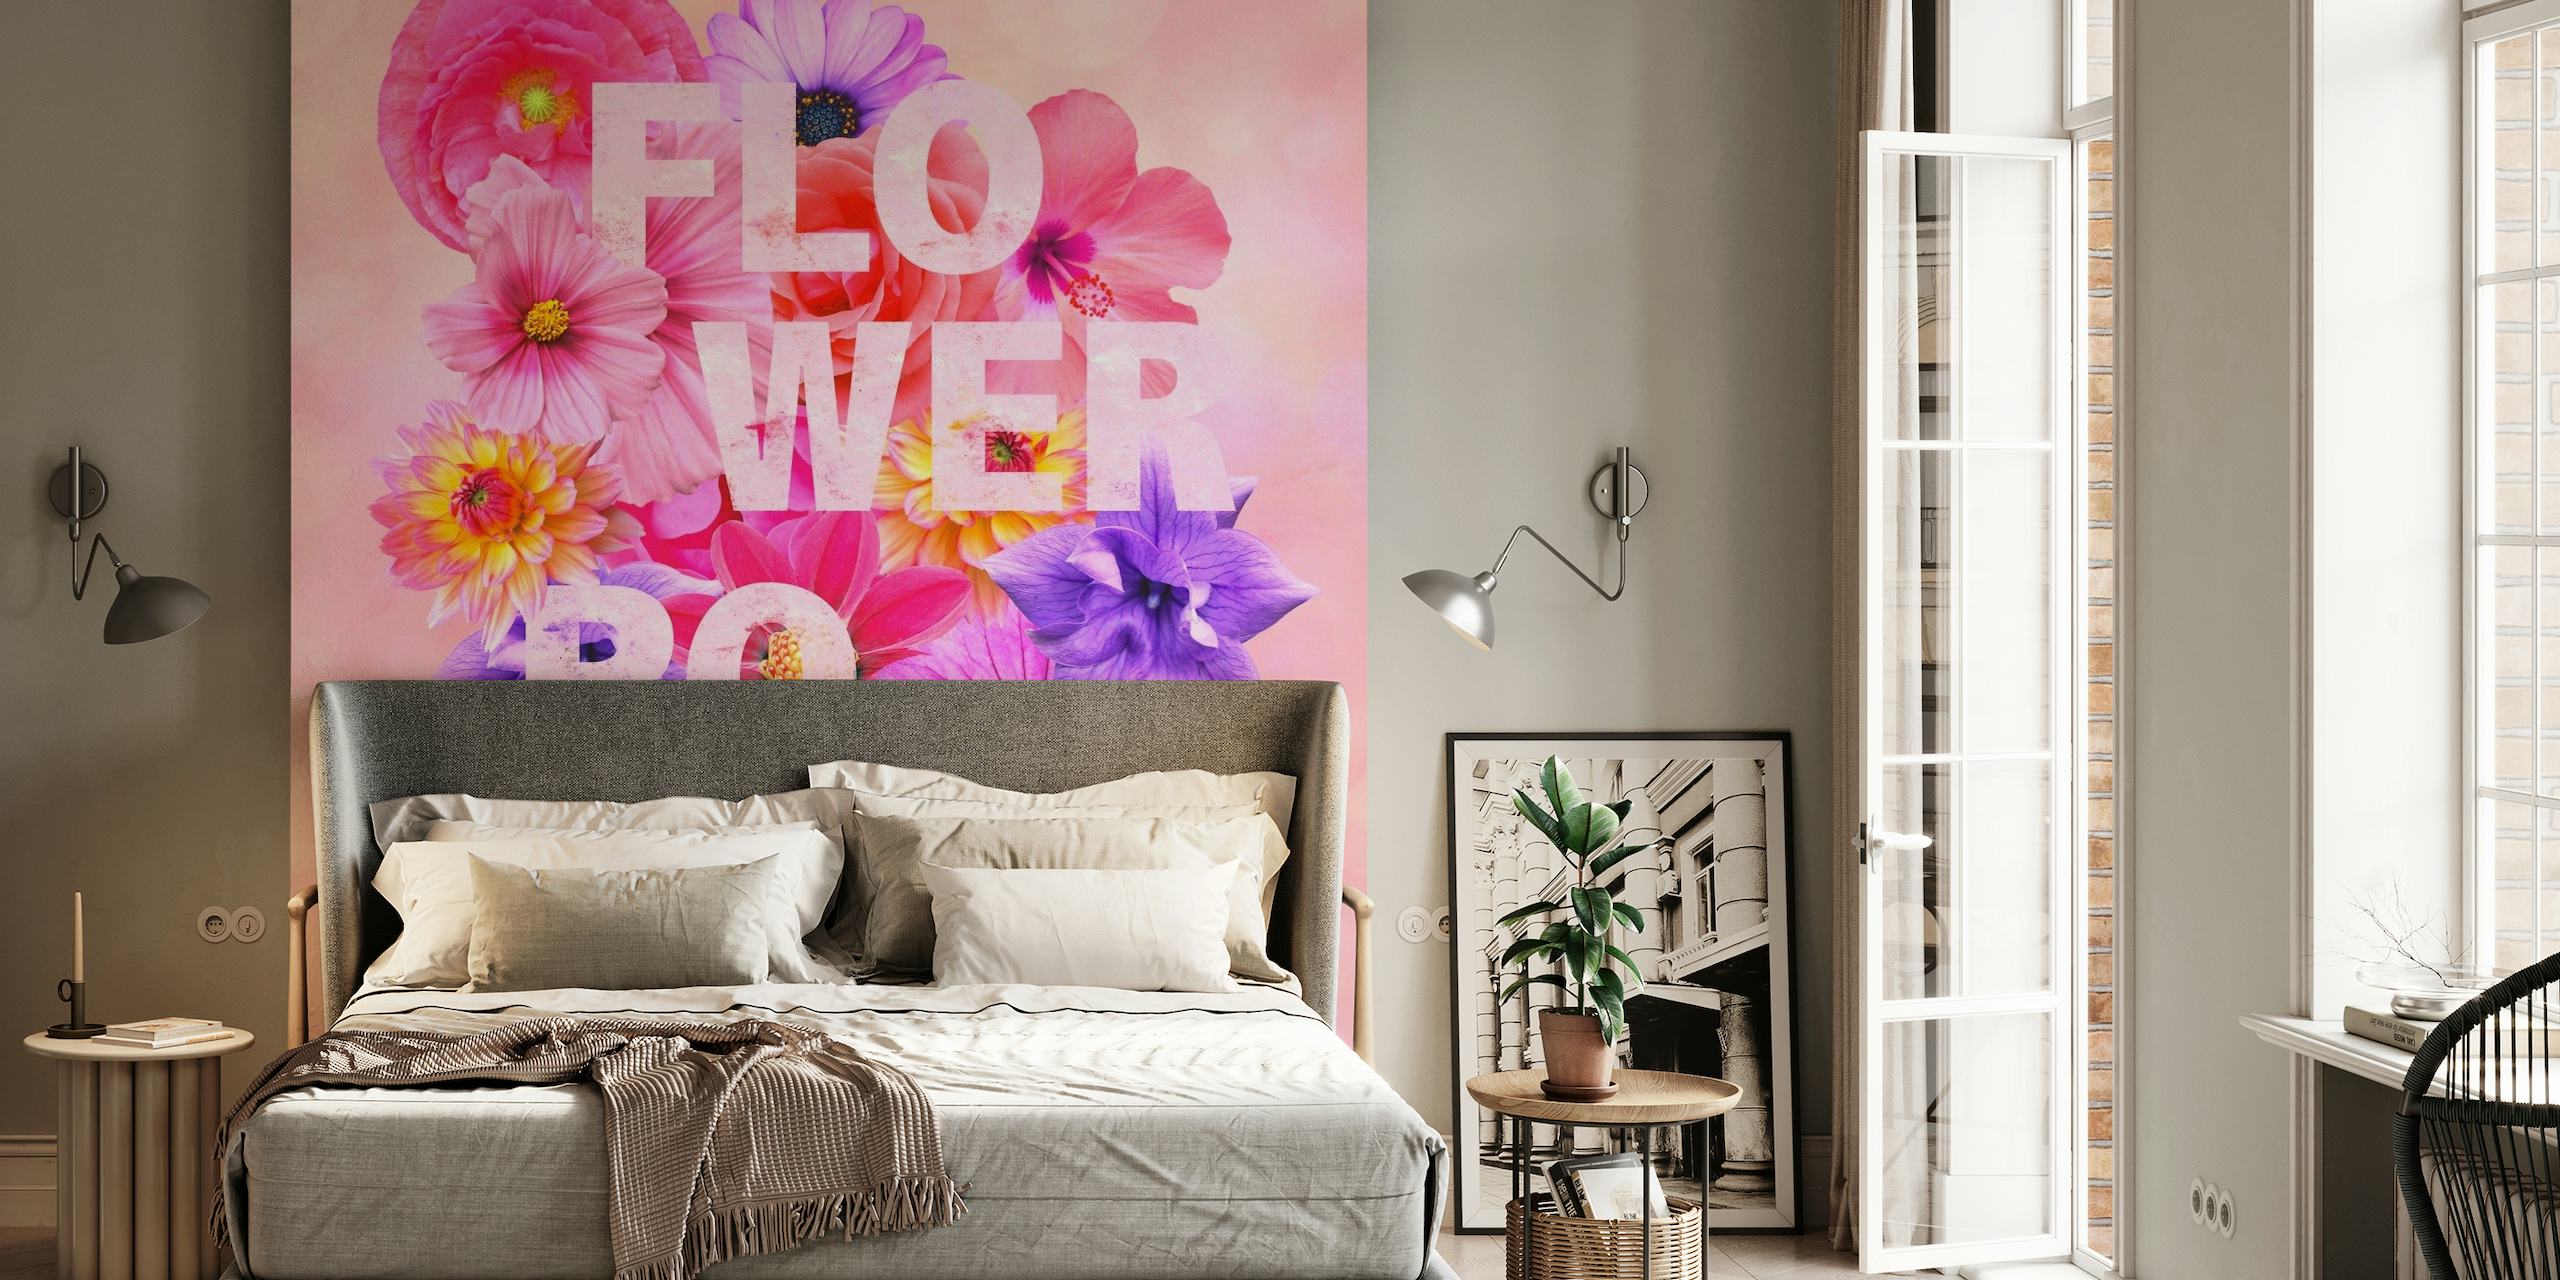 Farverigt blomstret vægmaleri med 'FLOWER POWER'-tekst, der udstråler en levende forårsstemning